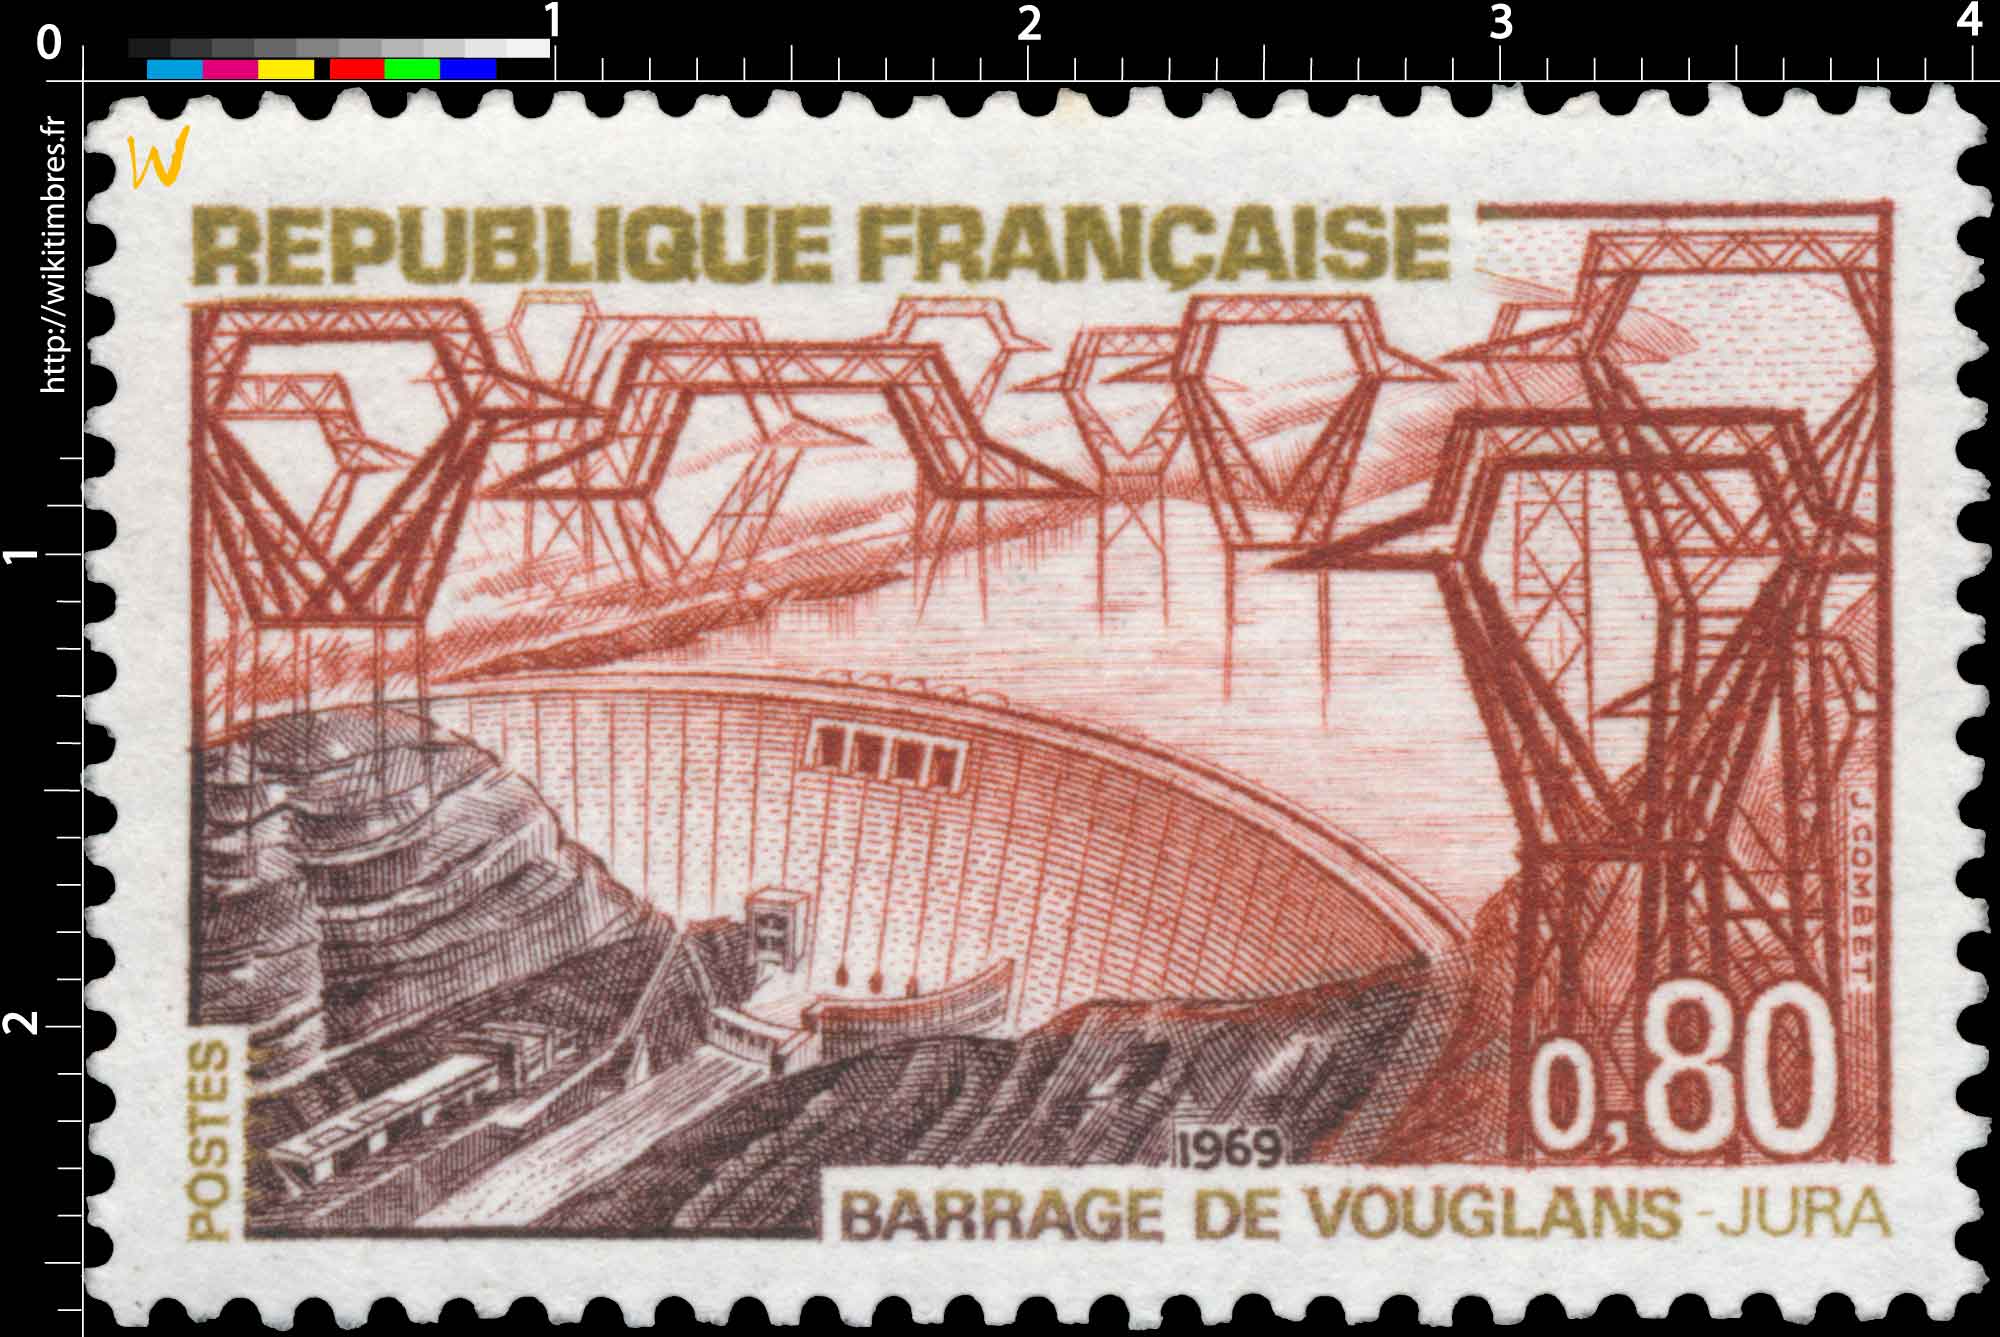 1969 BARRAGE DE VOUGLANS - JURA